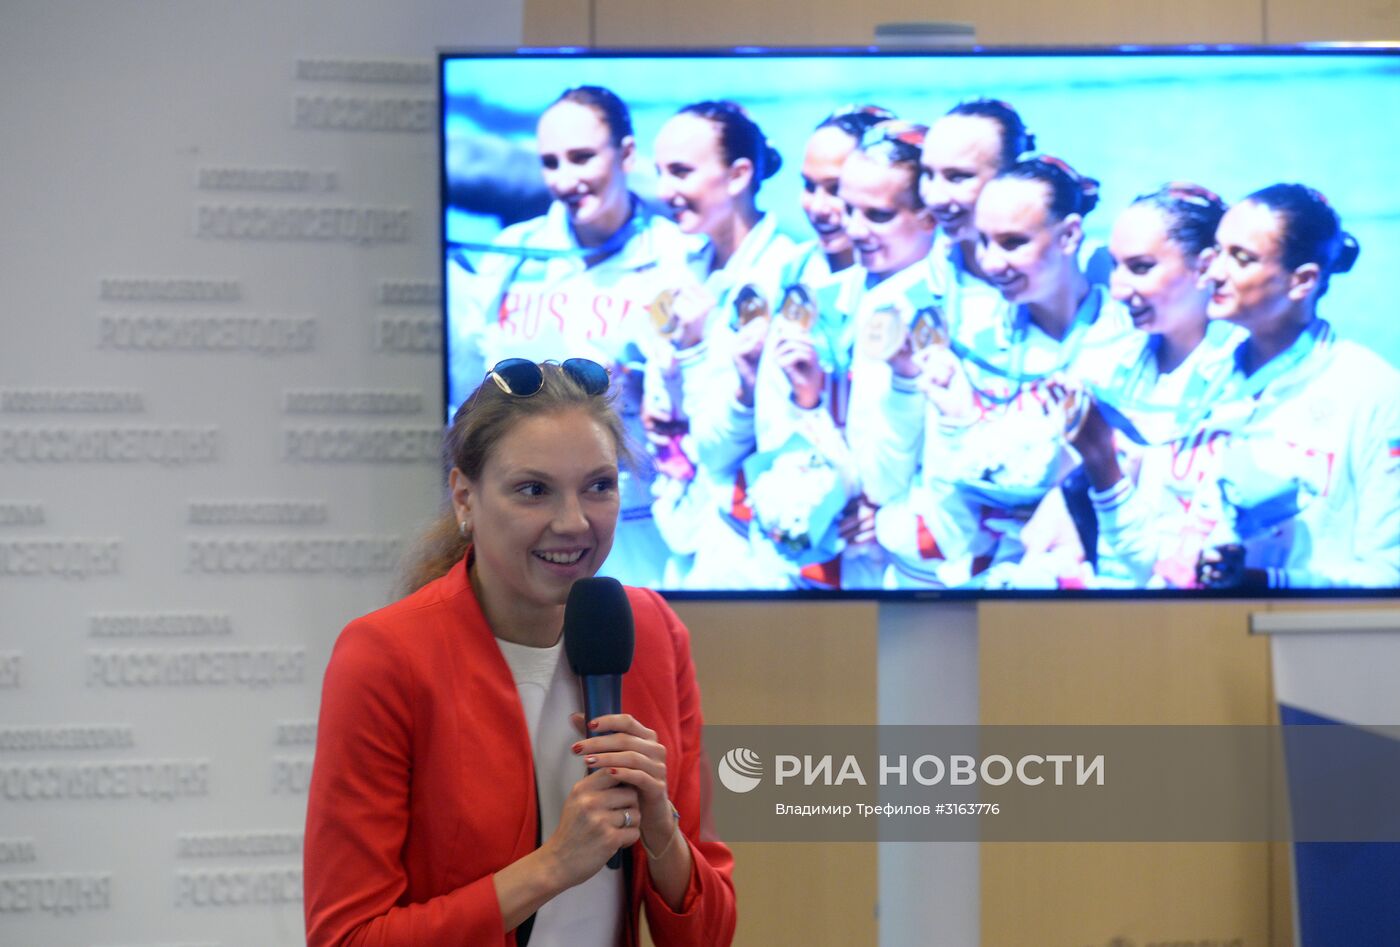 Пресс-конференция, посвященная выступлению сборной России на чемпионате мира по водным видам спорта